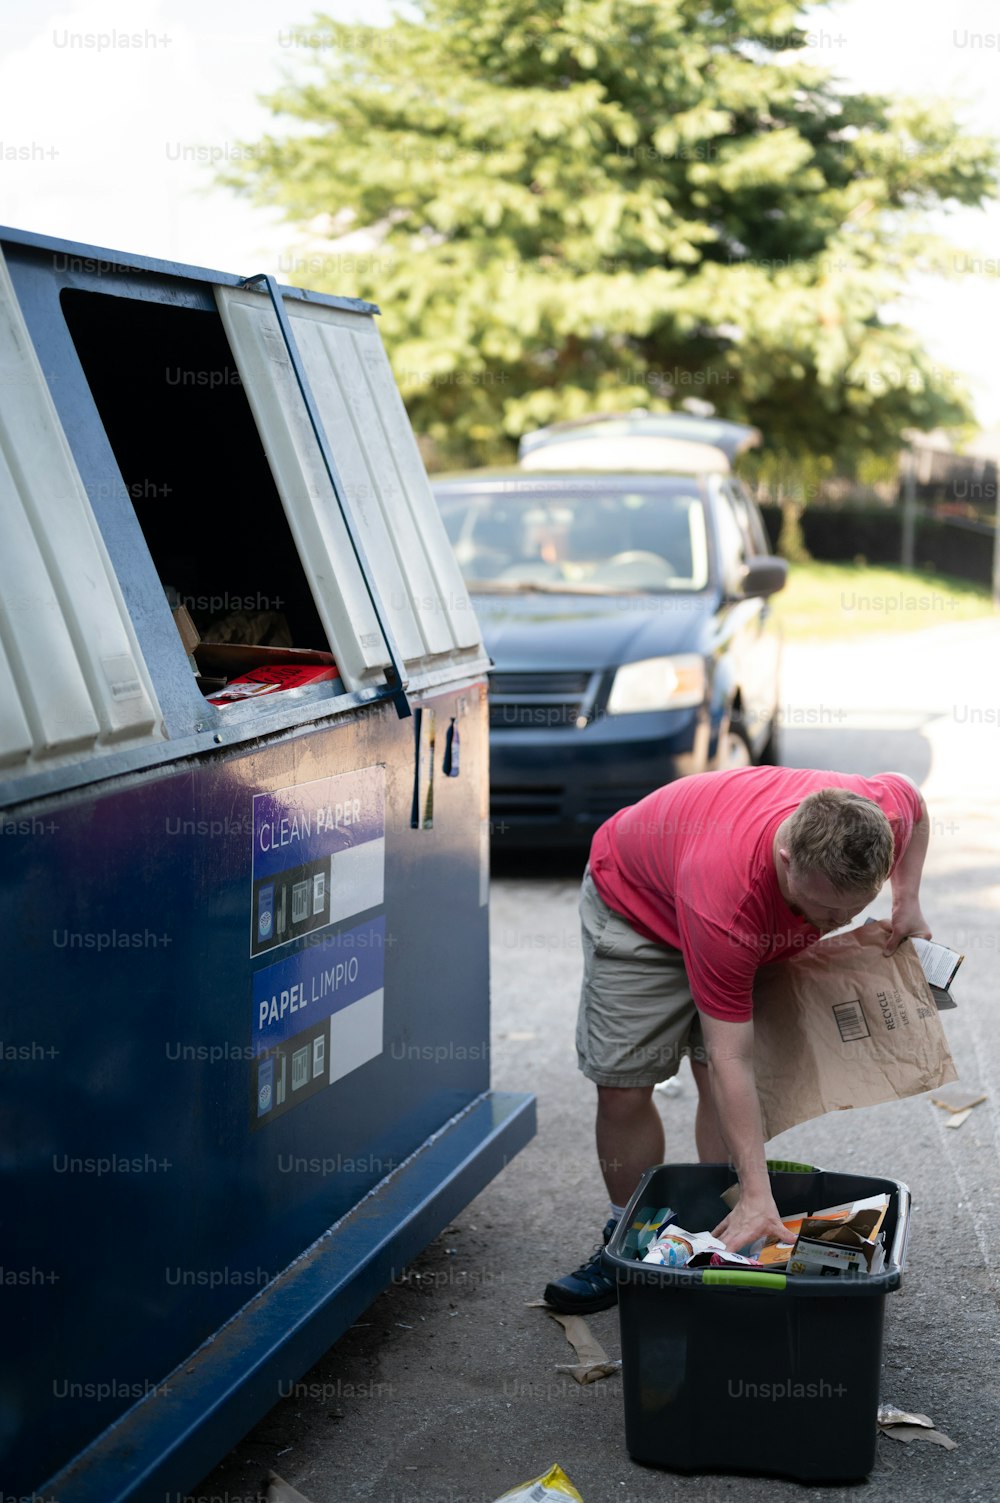 Un homme déchargeant une boîte d’articles d’une camionnette